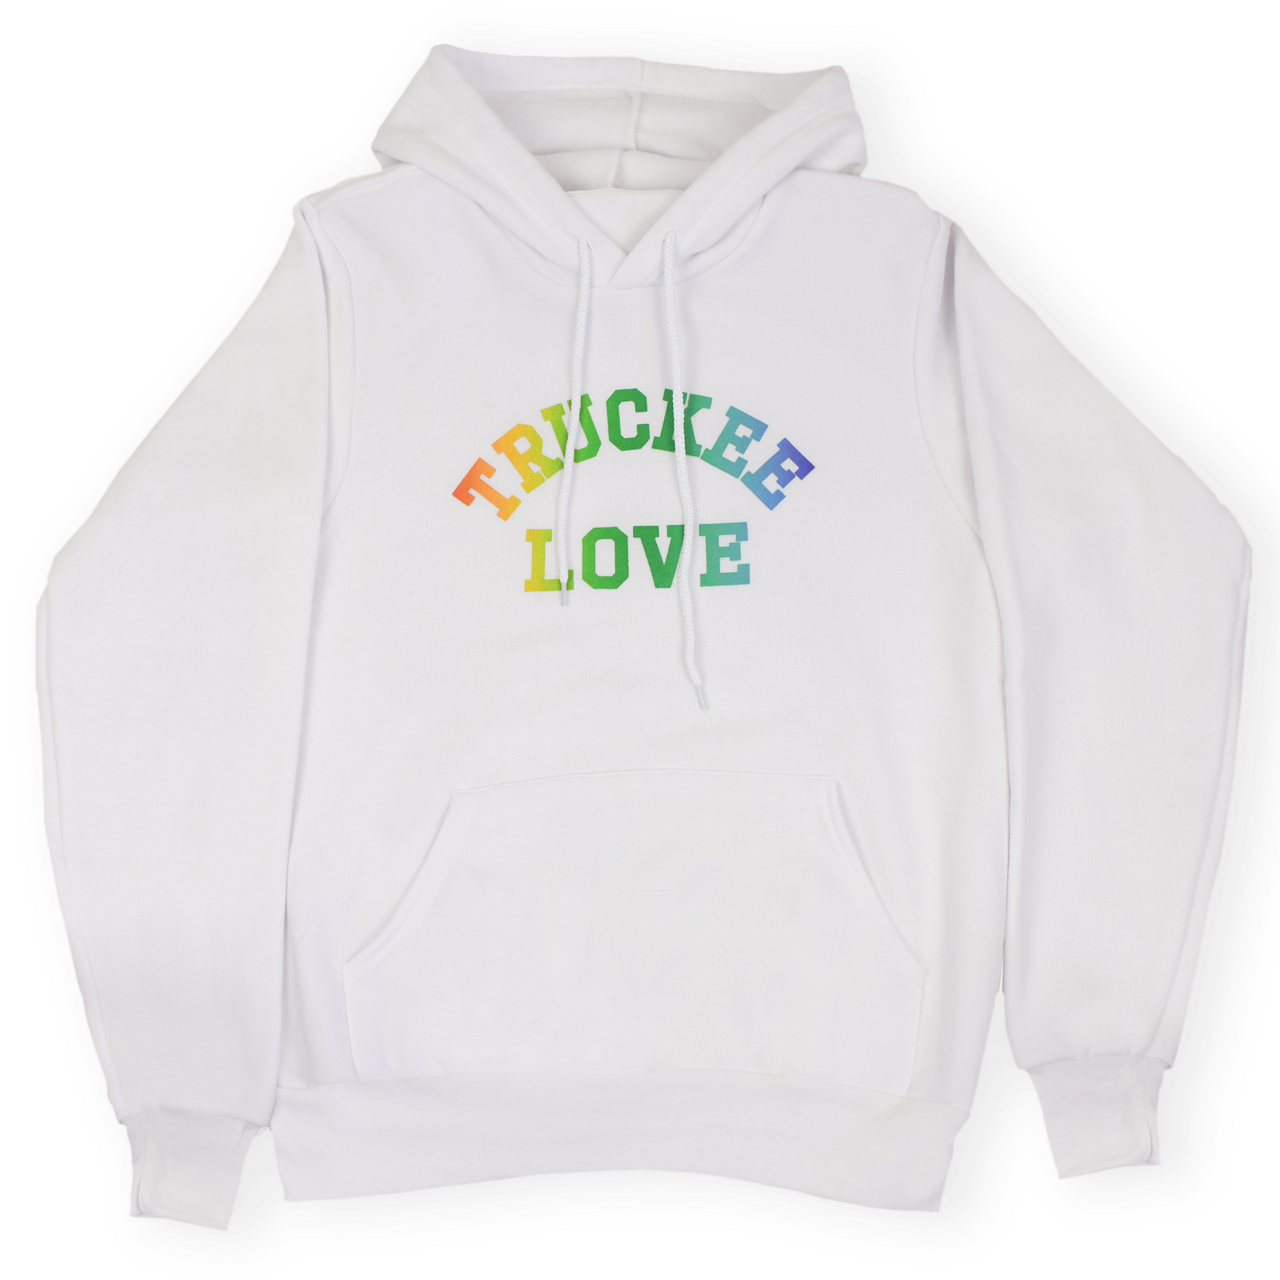 sweatshirt-pullover hoodie-love pride-adult